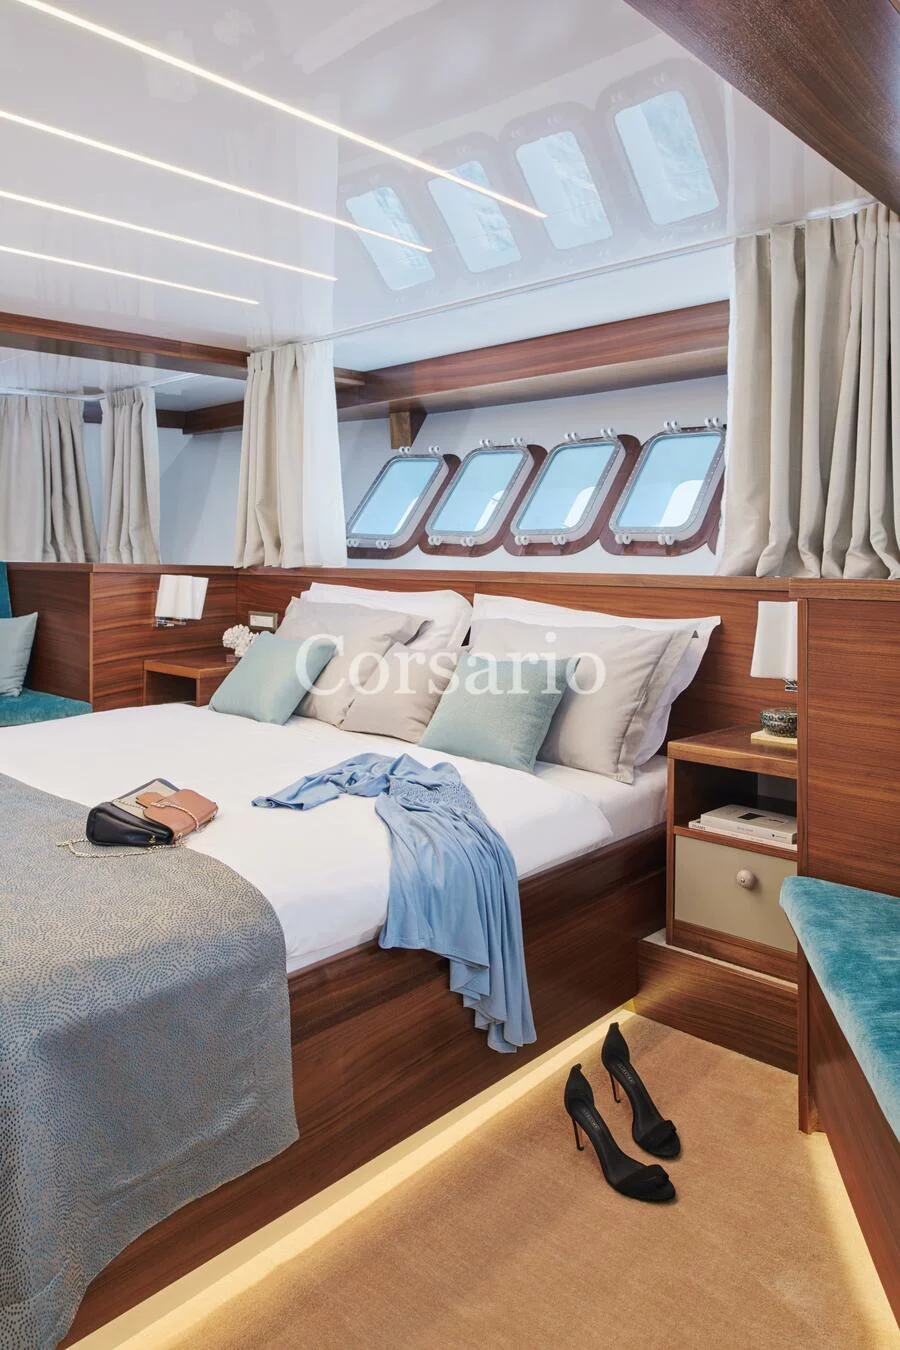 Luxury Sailing Yacht Corsario (Corsario)  - 13